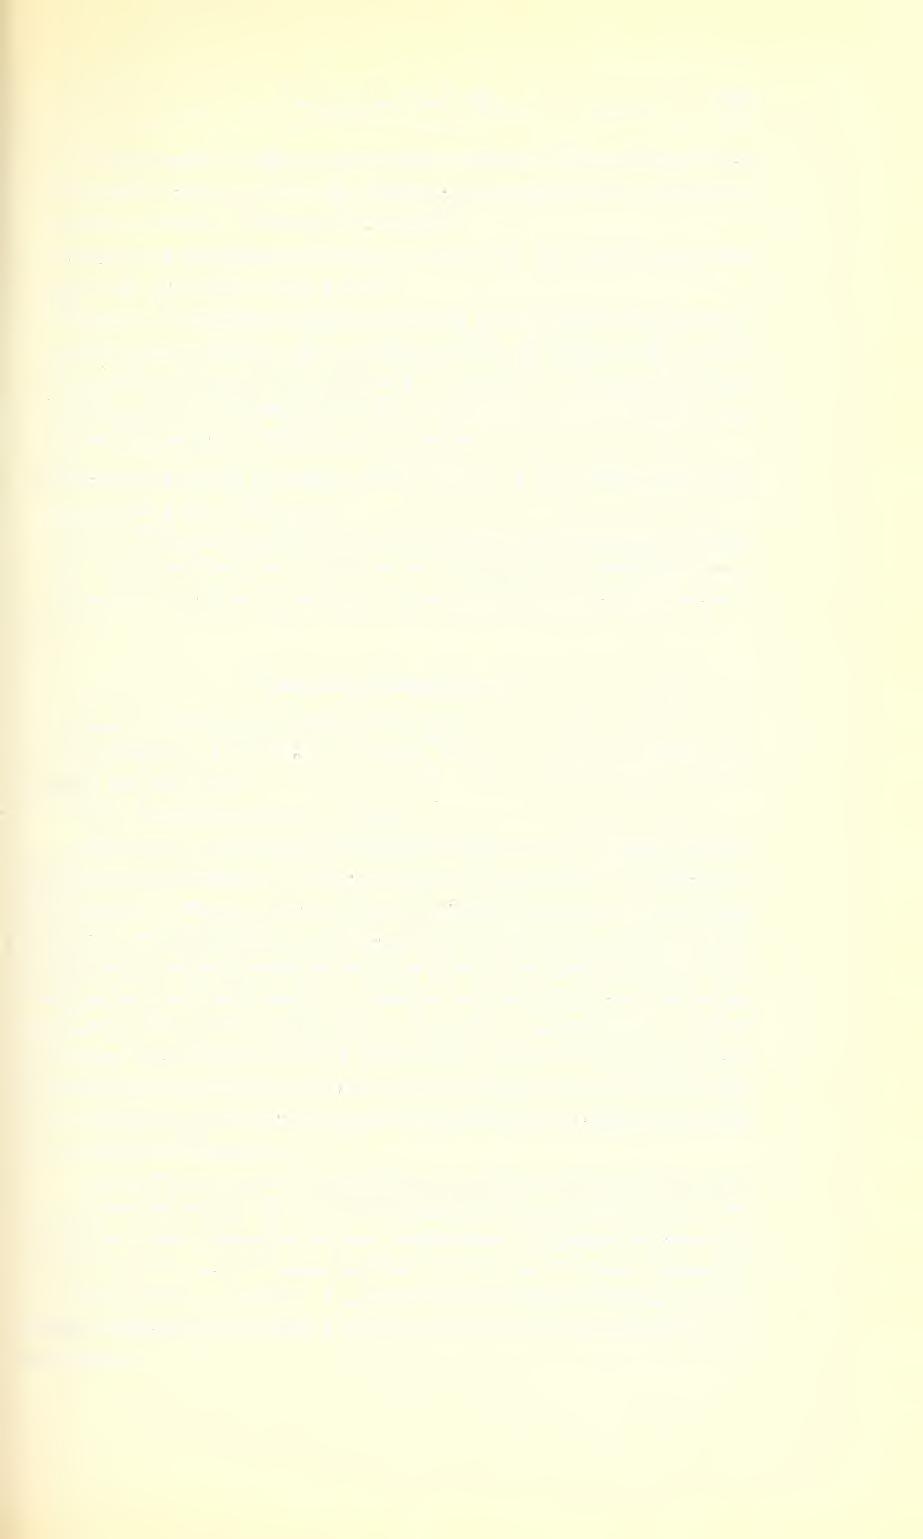 Ent. Arb. Mus. Frey 9, 1958 221 im Riksmuseum Stockholm. Aus dem weiteren Original-Material des sulcicollis habe ich nun die Lectotype ausgewählt (coli. Hartmann, Staatl. Museum f.